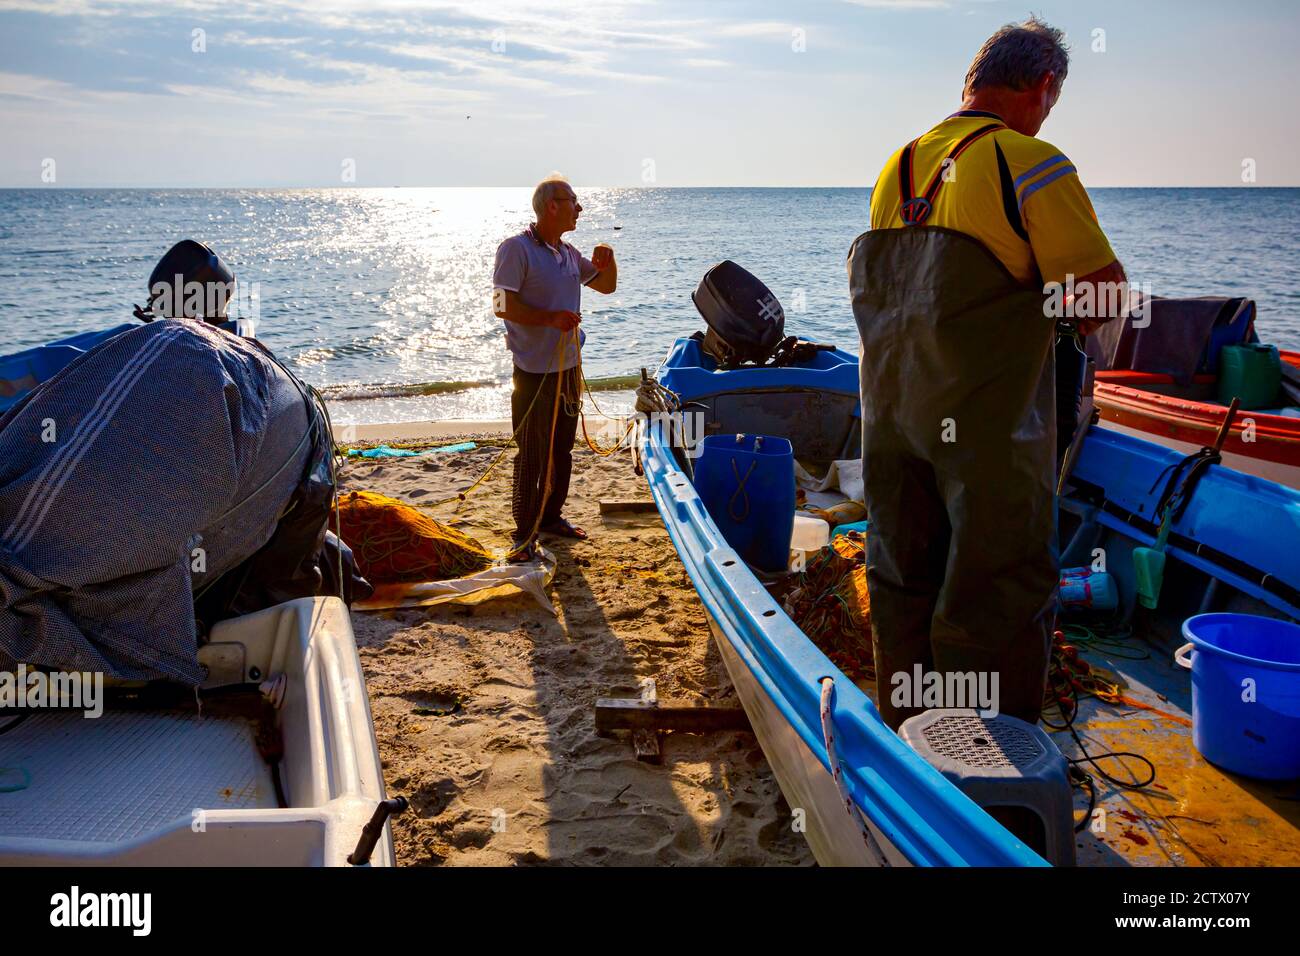 Deux pêcheurs sur la plage, l'un dans le bateau et l'autre à côté du bateau, empilent le filet de poisson pour la prochaine pêche à la ligne. Banque D'Images